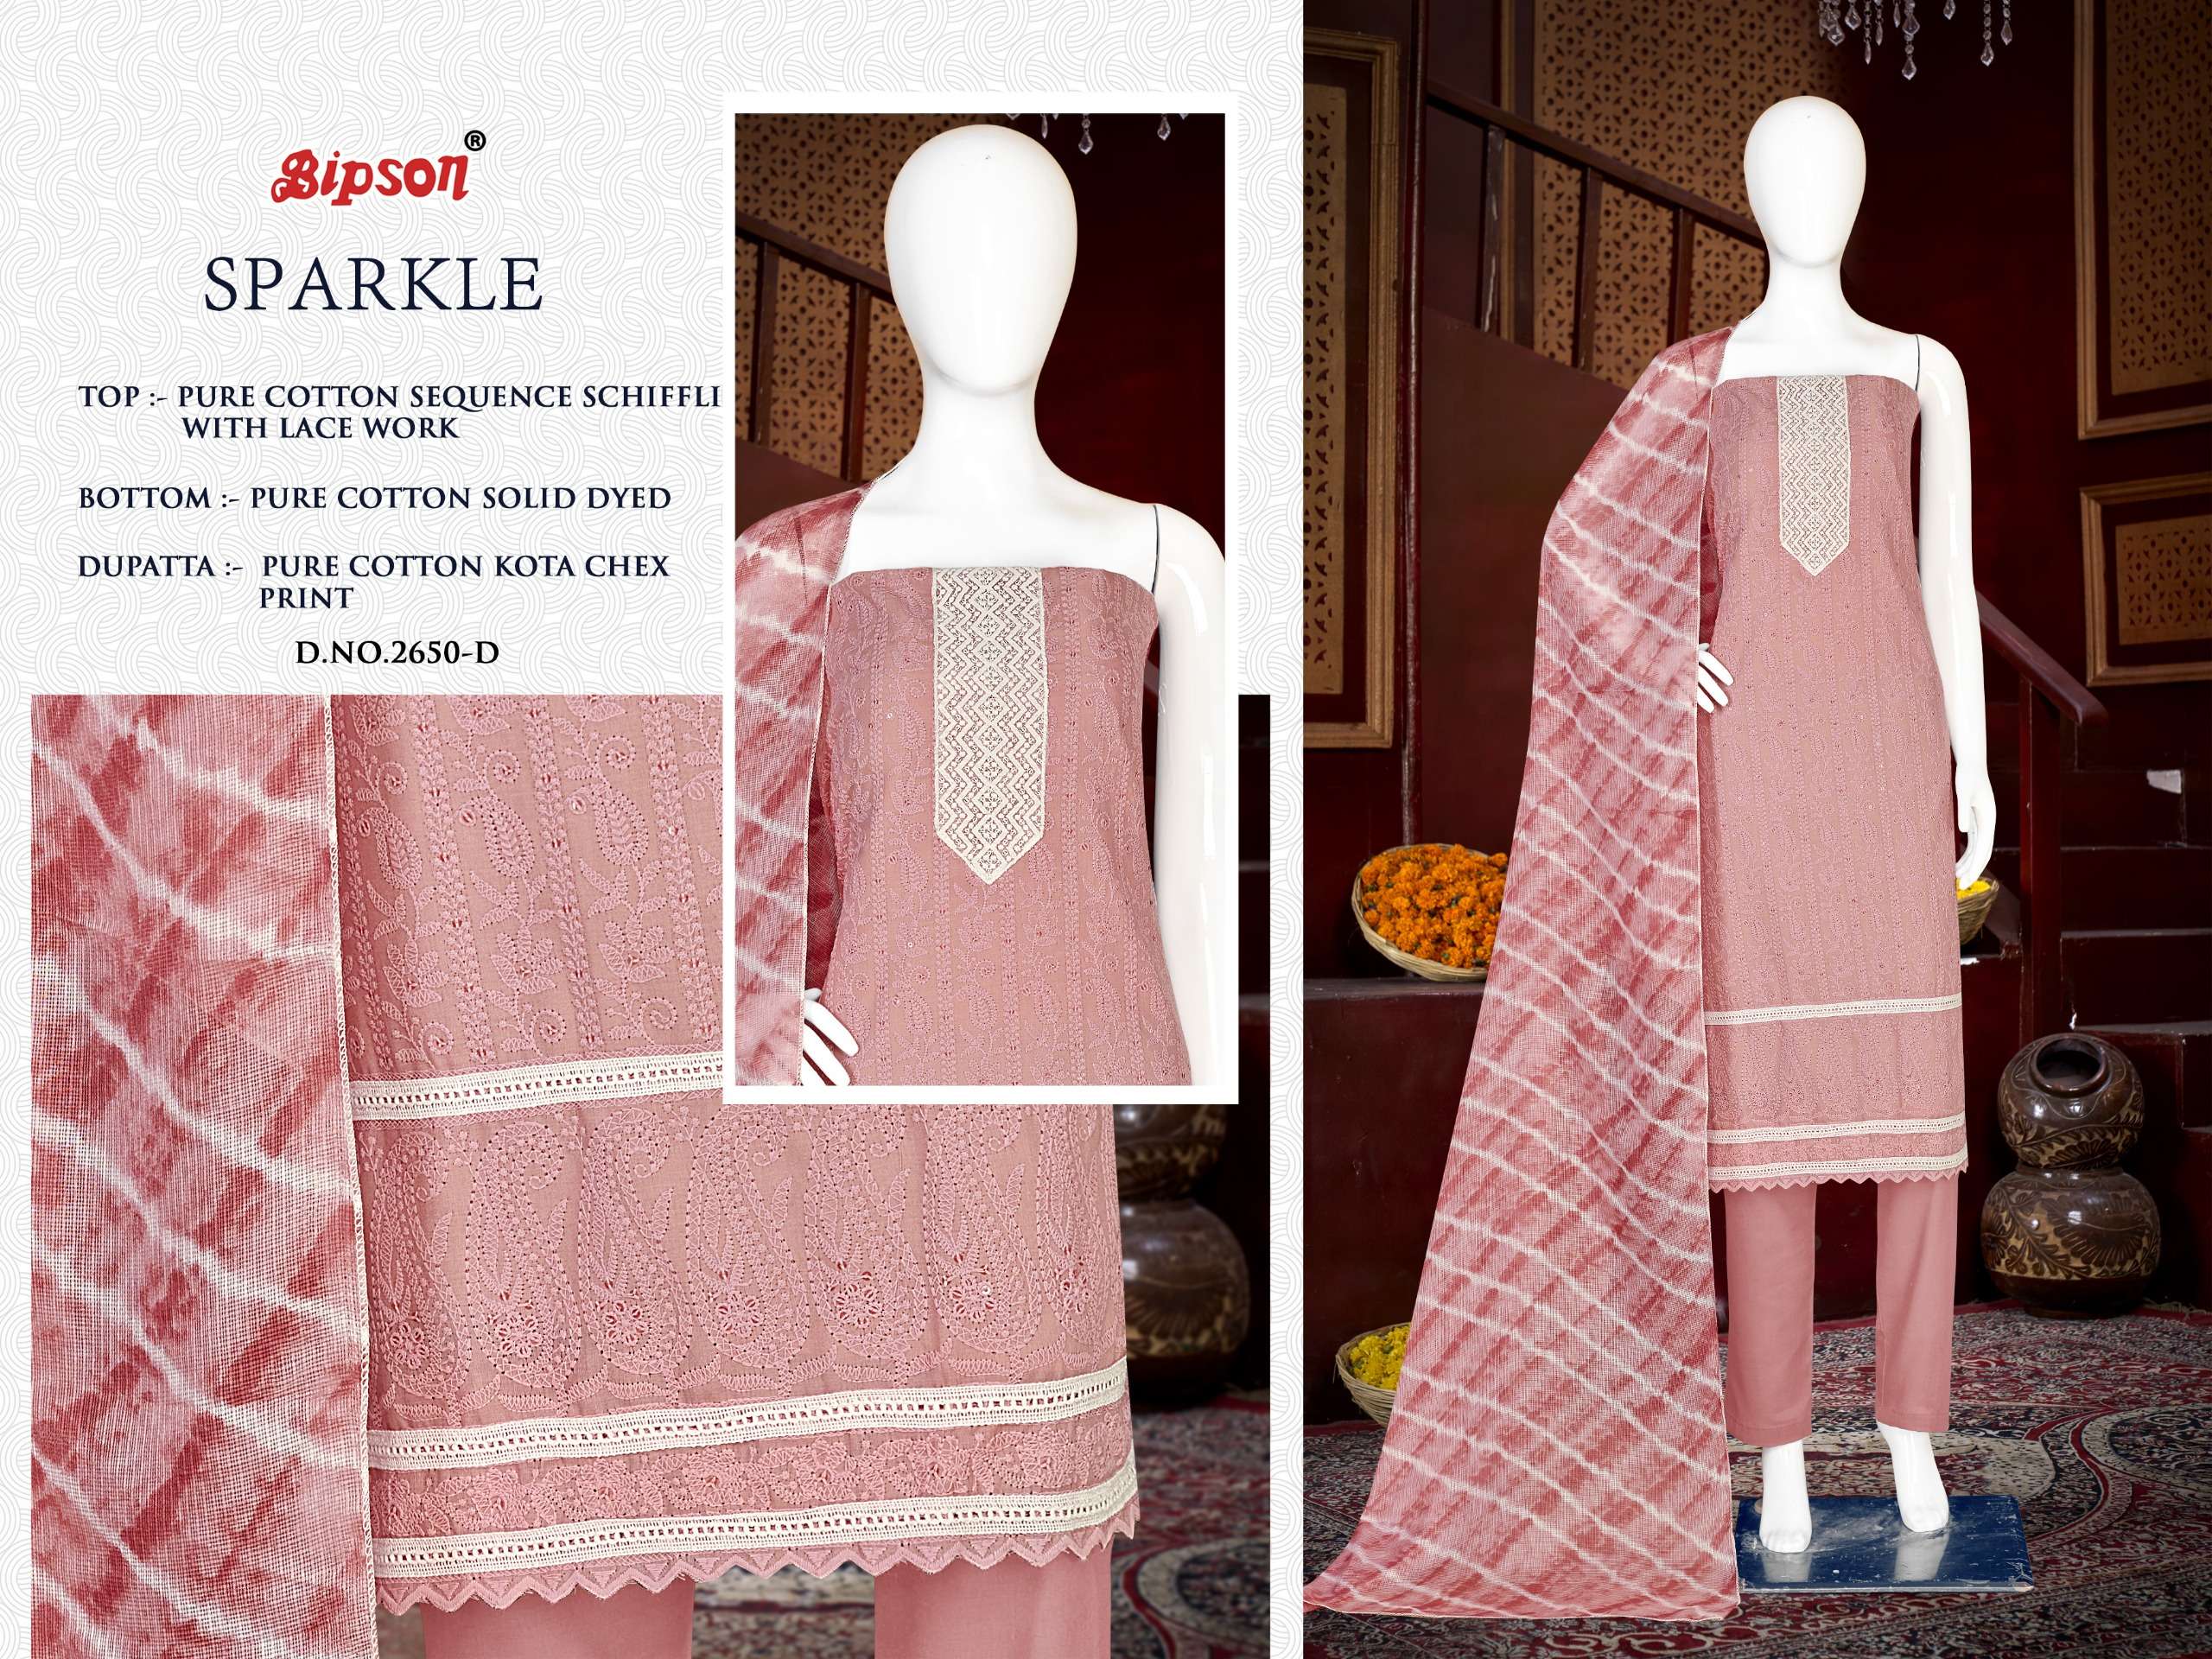 bipson sparkle 2650 cotton attrective print salwar suit catalog